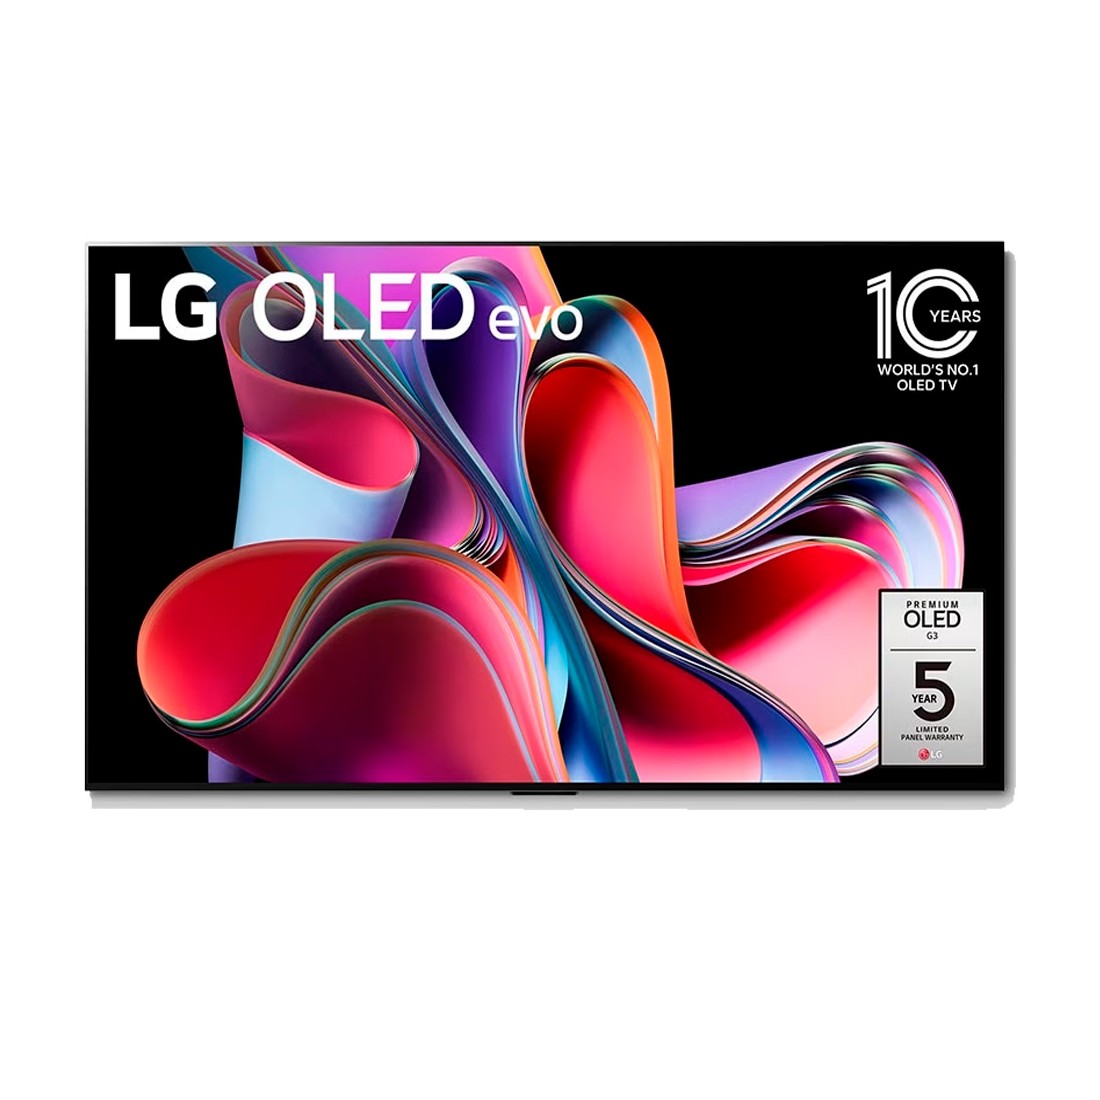 Comprar TV LG 4K OLED evo, GALLERY, 139cm (55), con soporte y